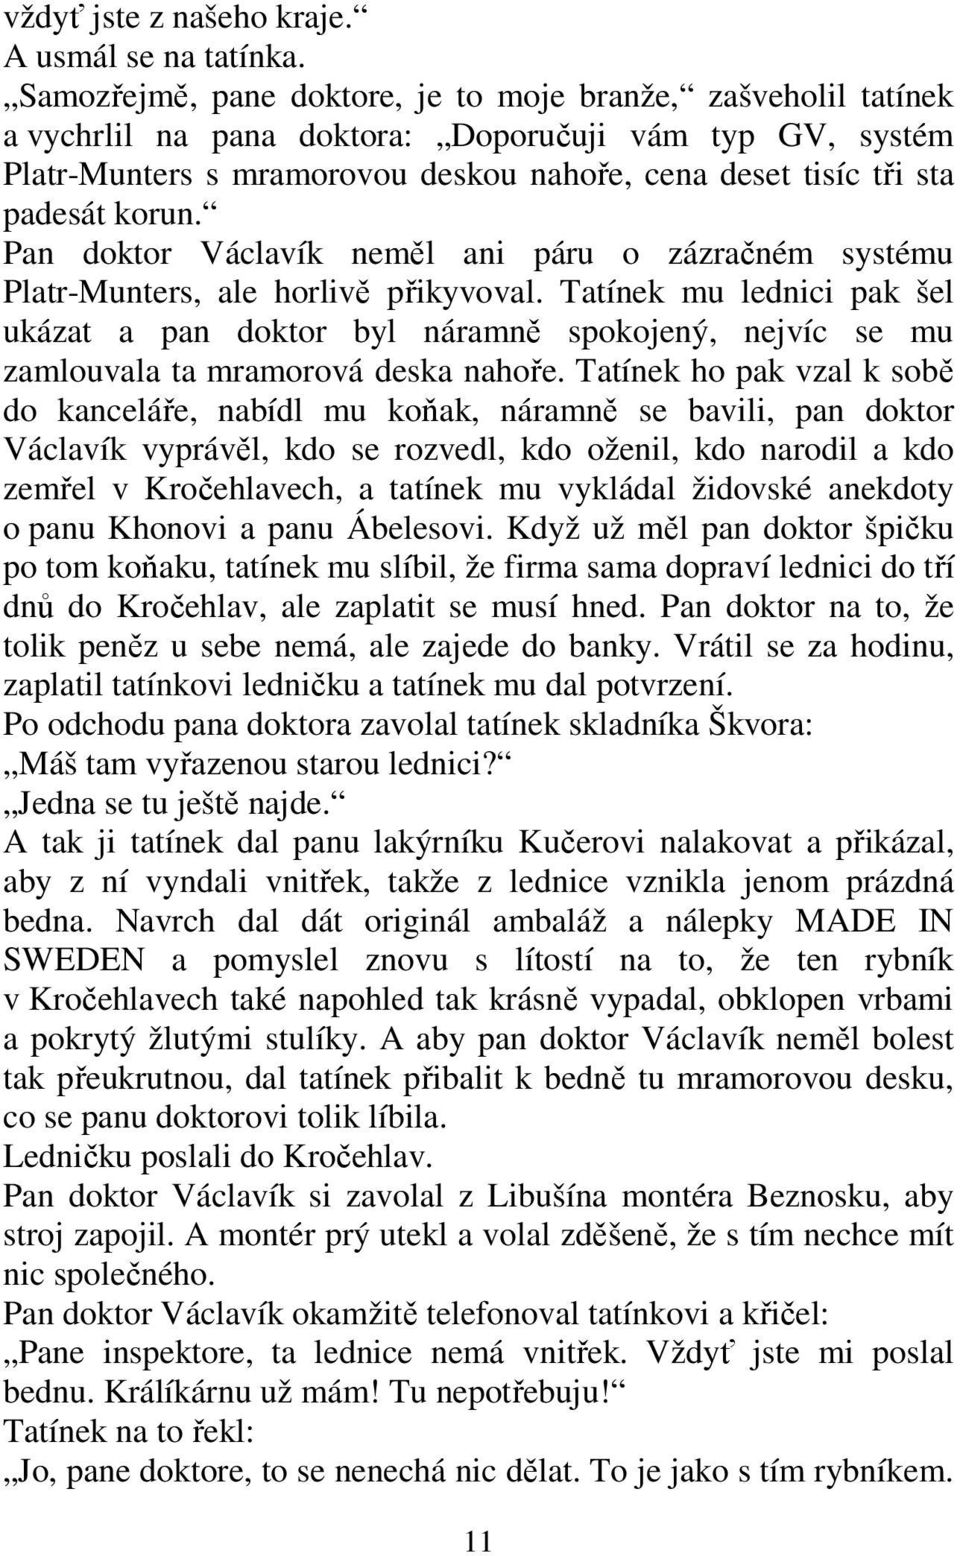 korun. Pan doktor Václavík neměl ani páru o zázračném systému Platr-Munters, ale horlivě přikyvoval.